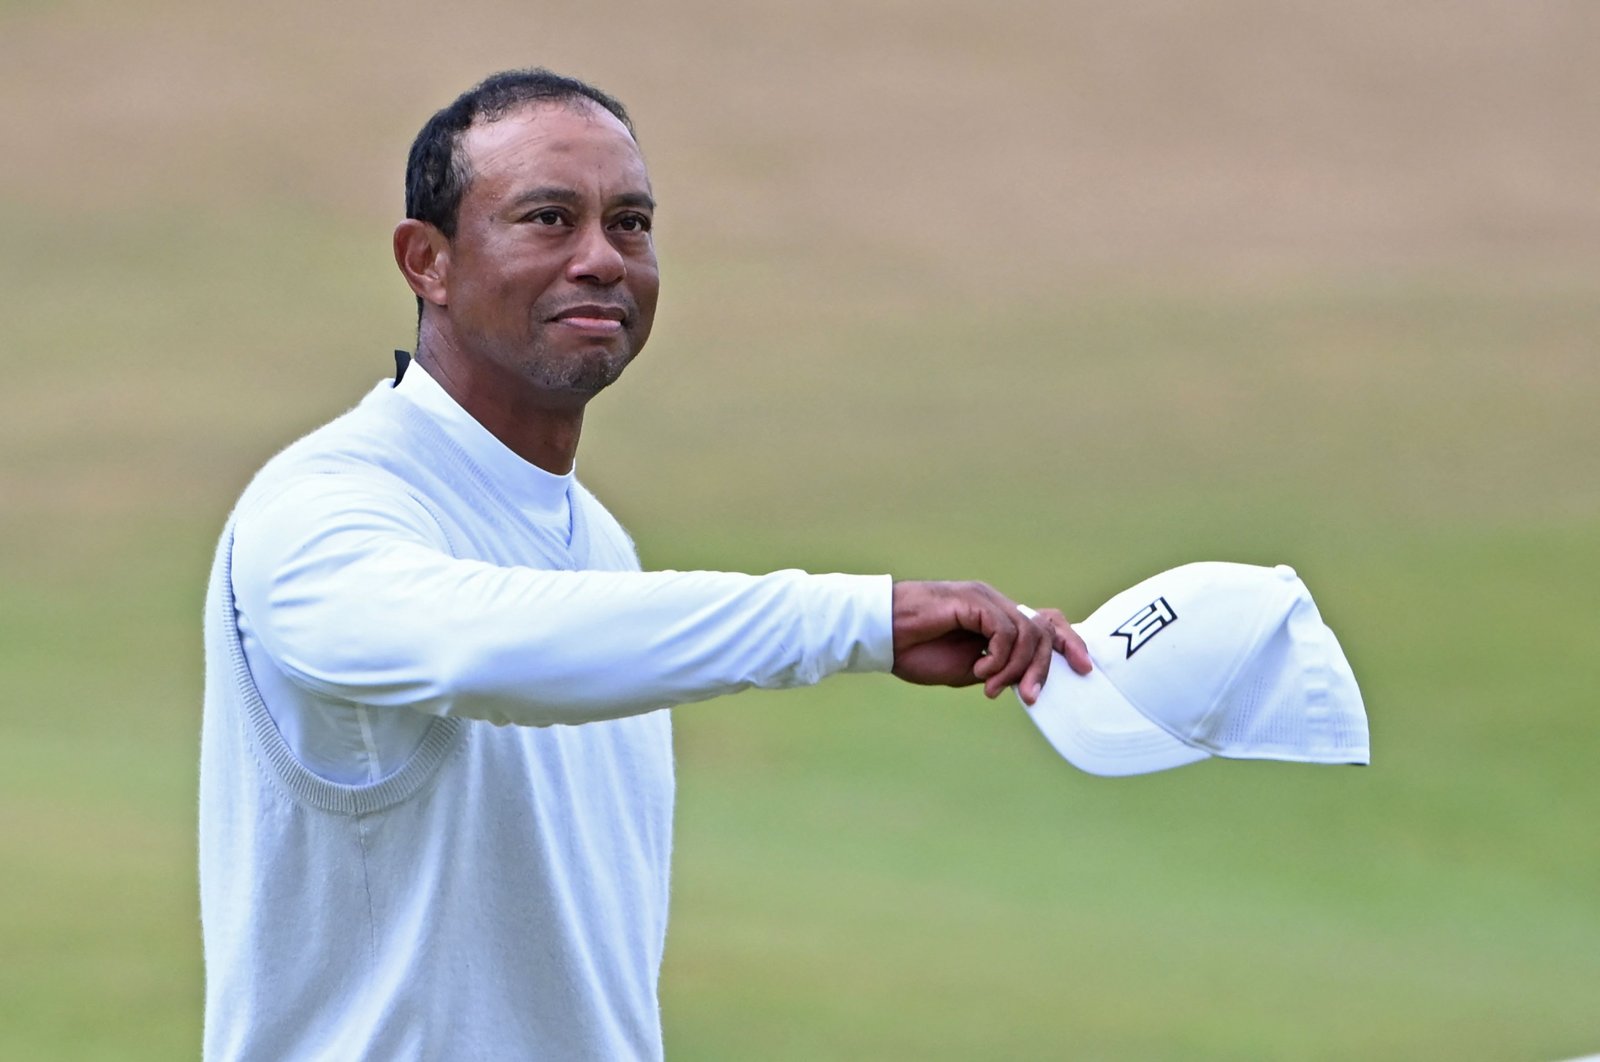 CEO LIV Golf Norman mengungkapkan bahwa Tiger Woods menolak tawaran 0-800M